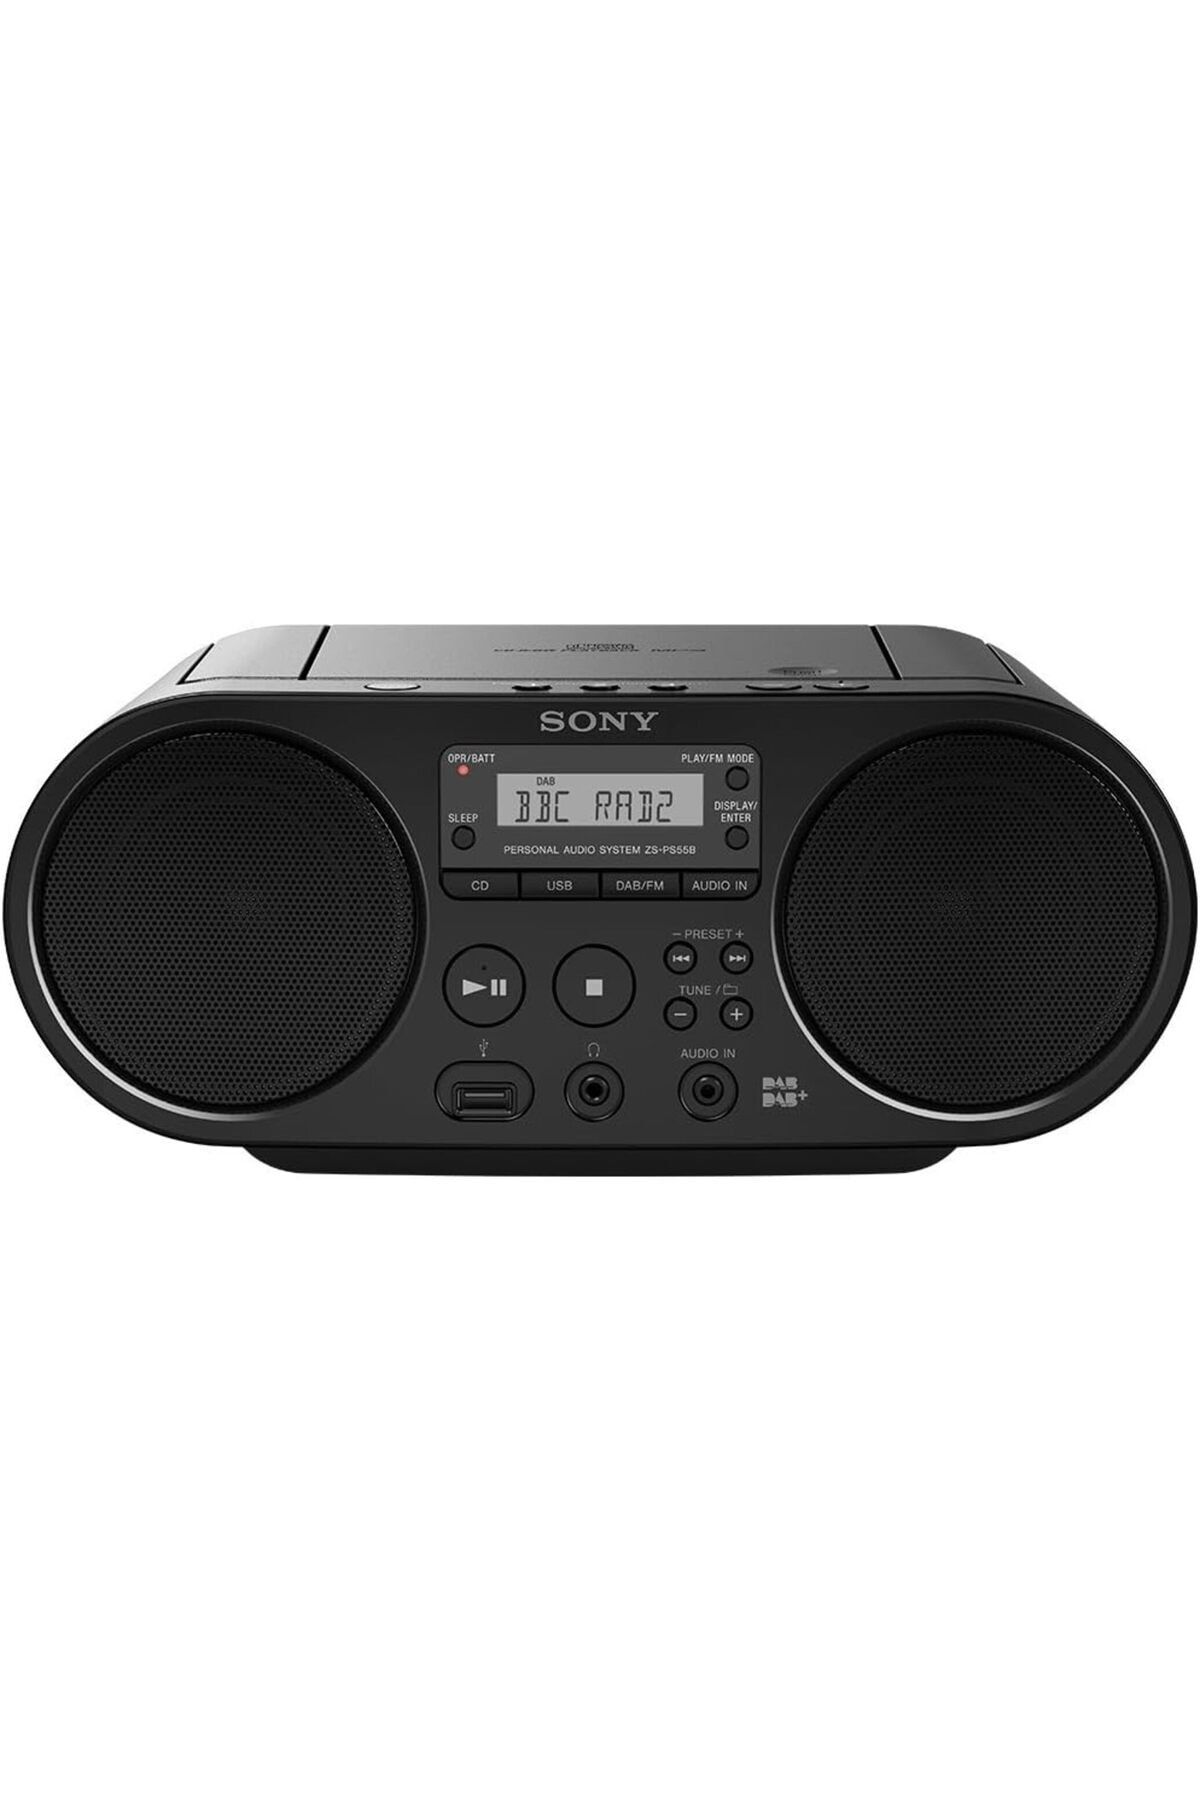 Sony ZS-PS55 Radyo saatli Radyo / CD Çalar, MP3 Bağlantı Noktası, USB uyumlu radyo, AM/FM